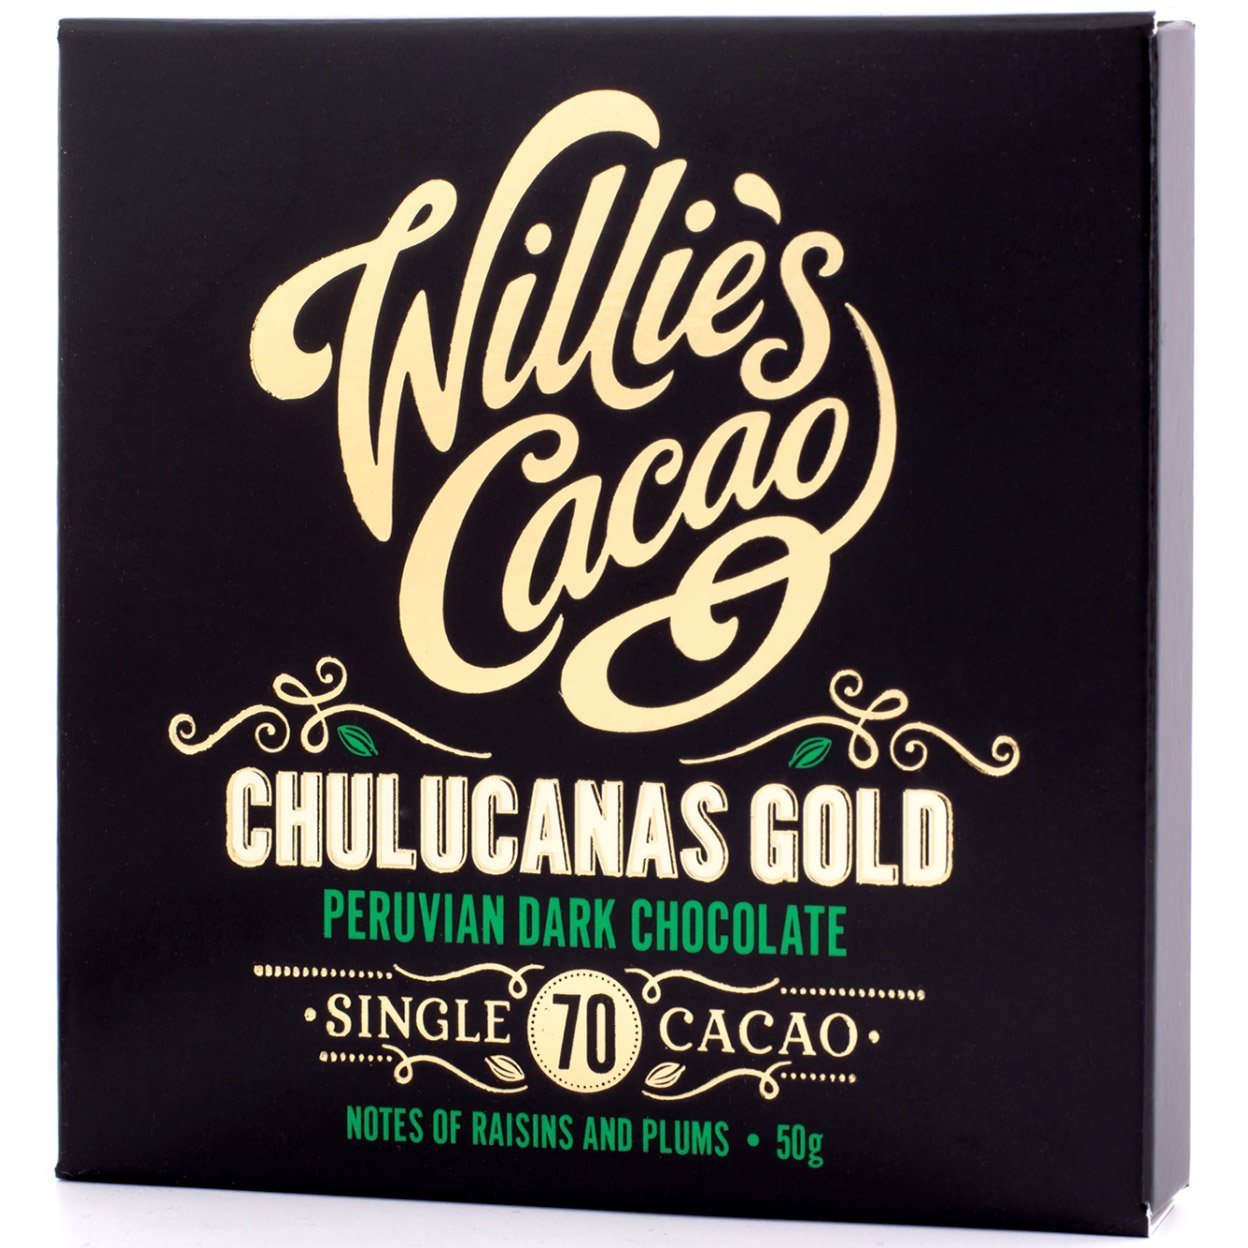 Шоколад черный Willie's Cacao Chulucanas Gold Peru 70% 50 г (814631) - фото 1